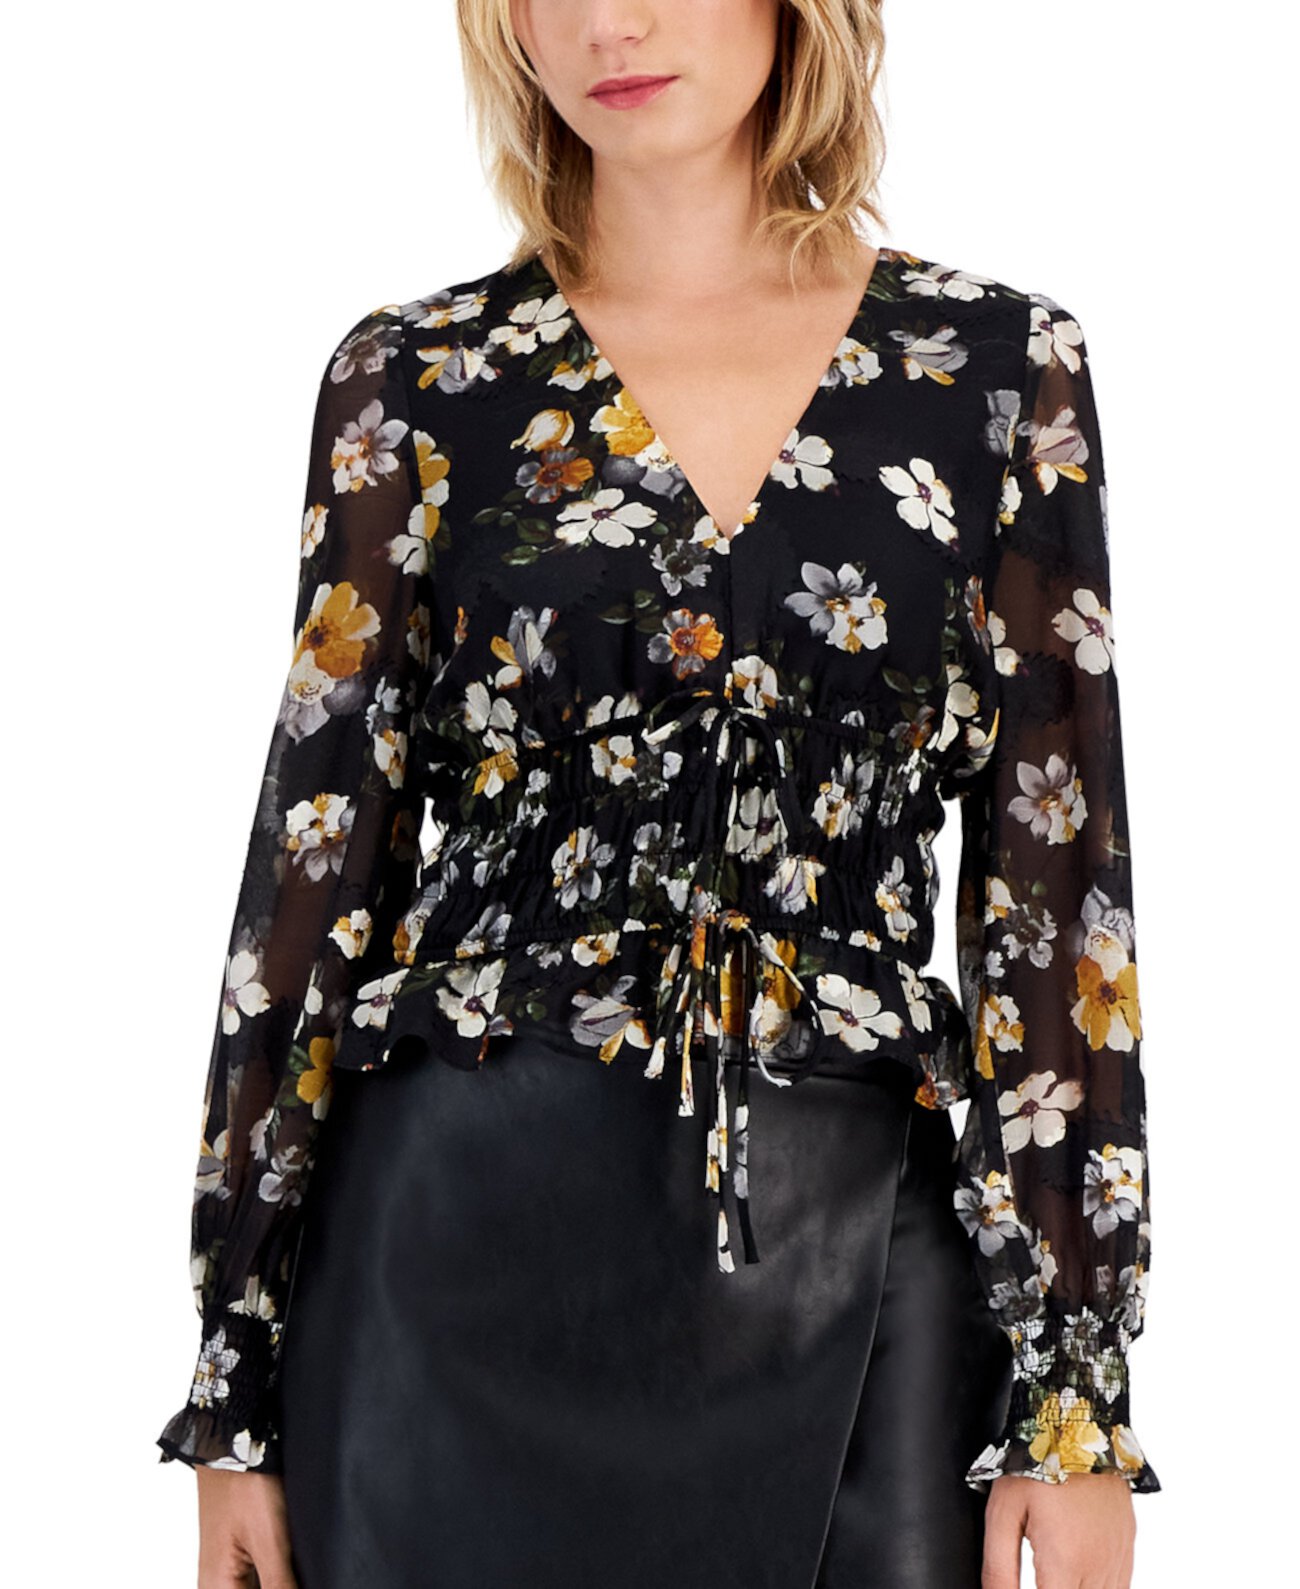 Женская блузка с цветочным принтом, присборенной талией, завязкой спереди и прозрачными рукавами Lucy Paris